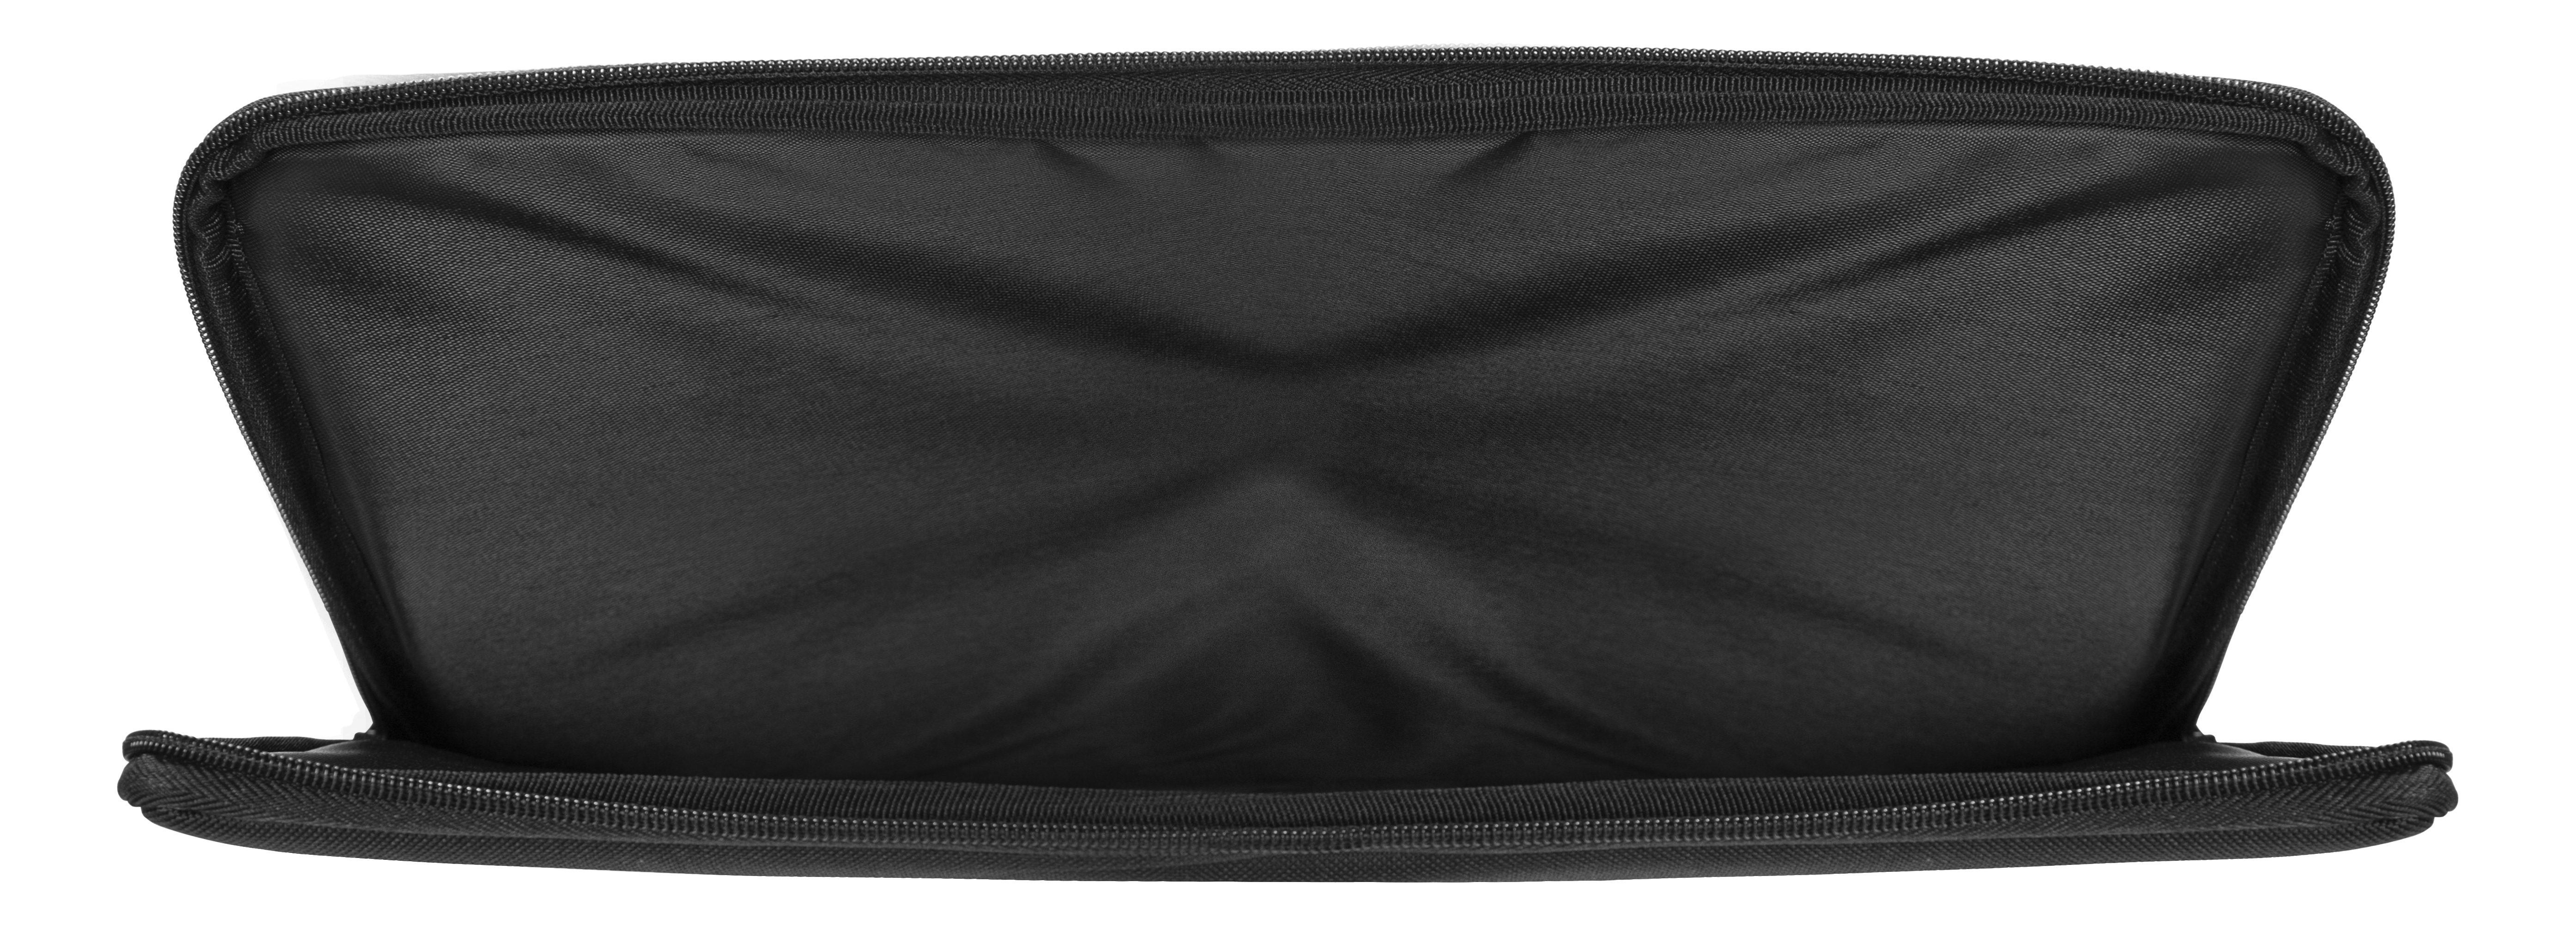 DELTACO NV-902 für Notebooktasche Schwarz Universal Verschiedene Sleeve Materialien